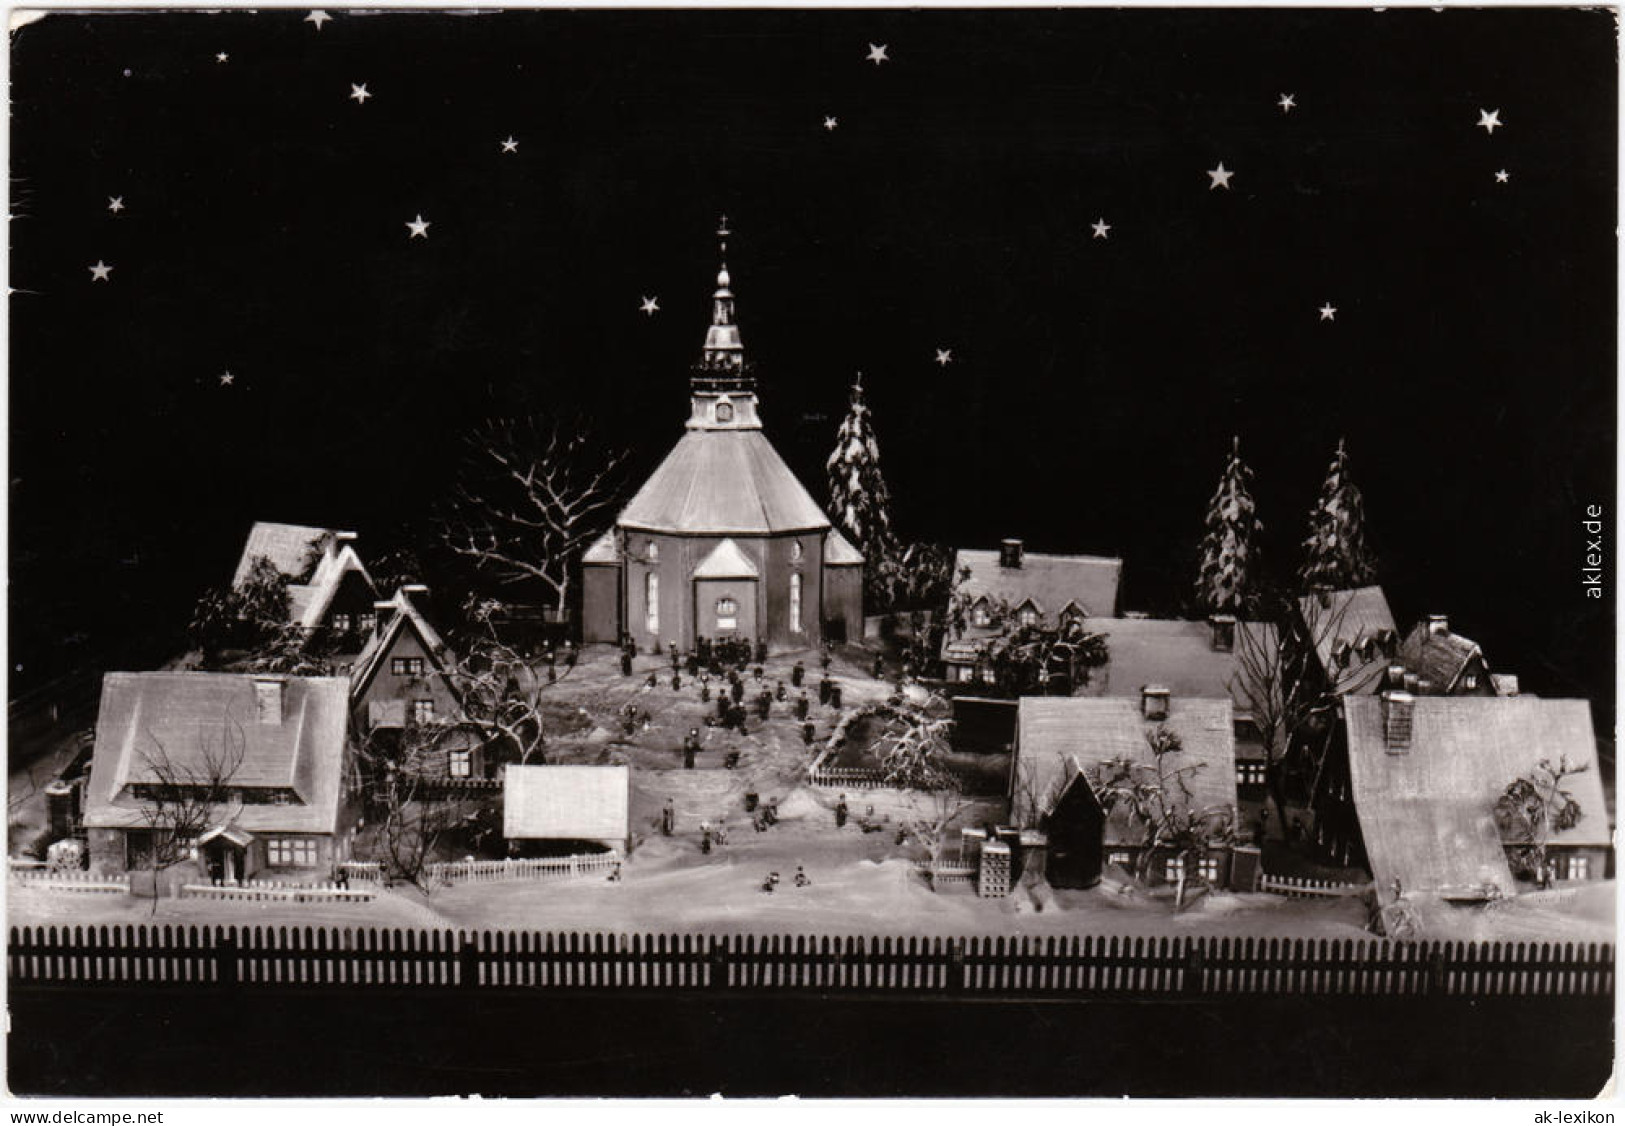 Seiffen (Erzgebirge) Glückwunsch: Weihnachten - Modell Der Seiffener Kirche 1984 - Seiffen